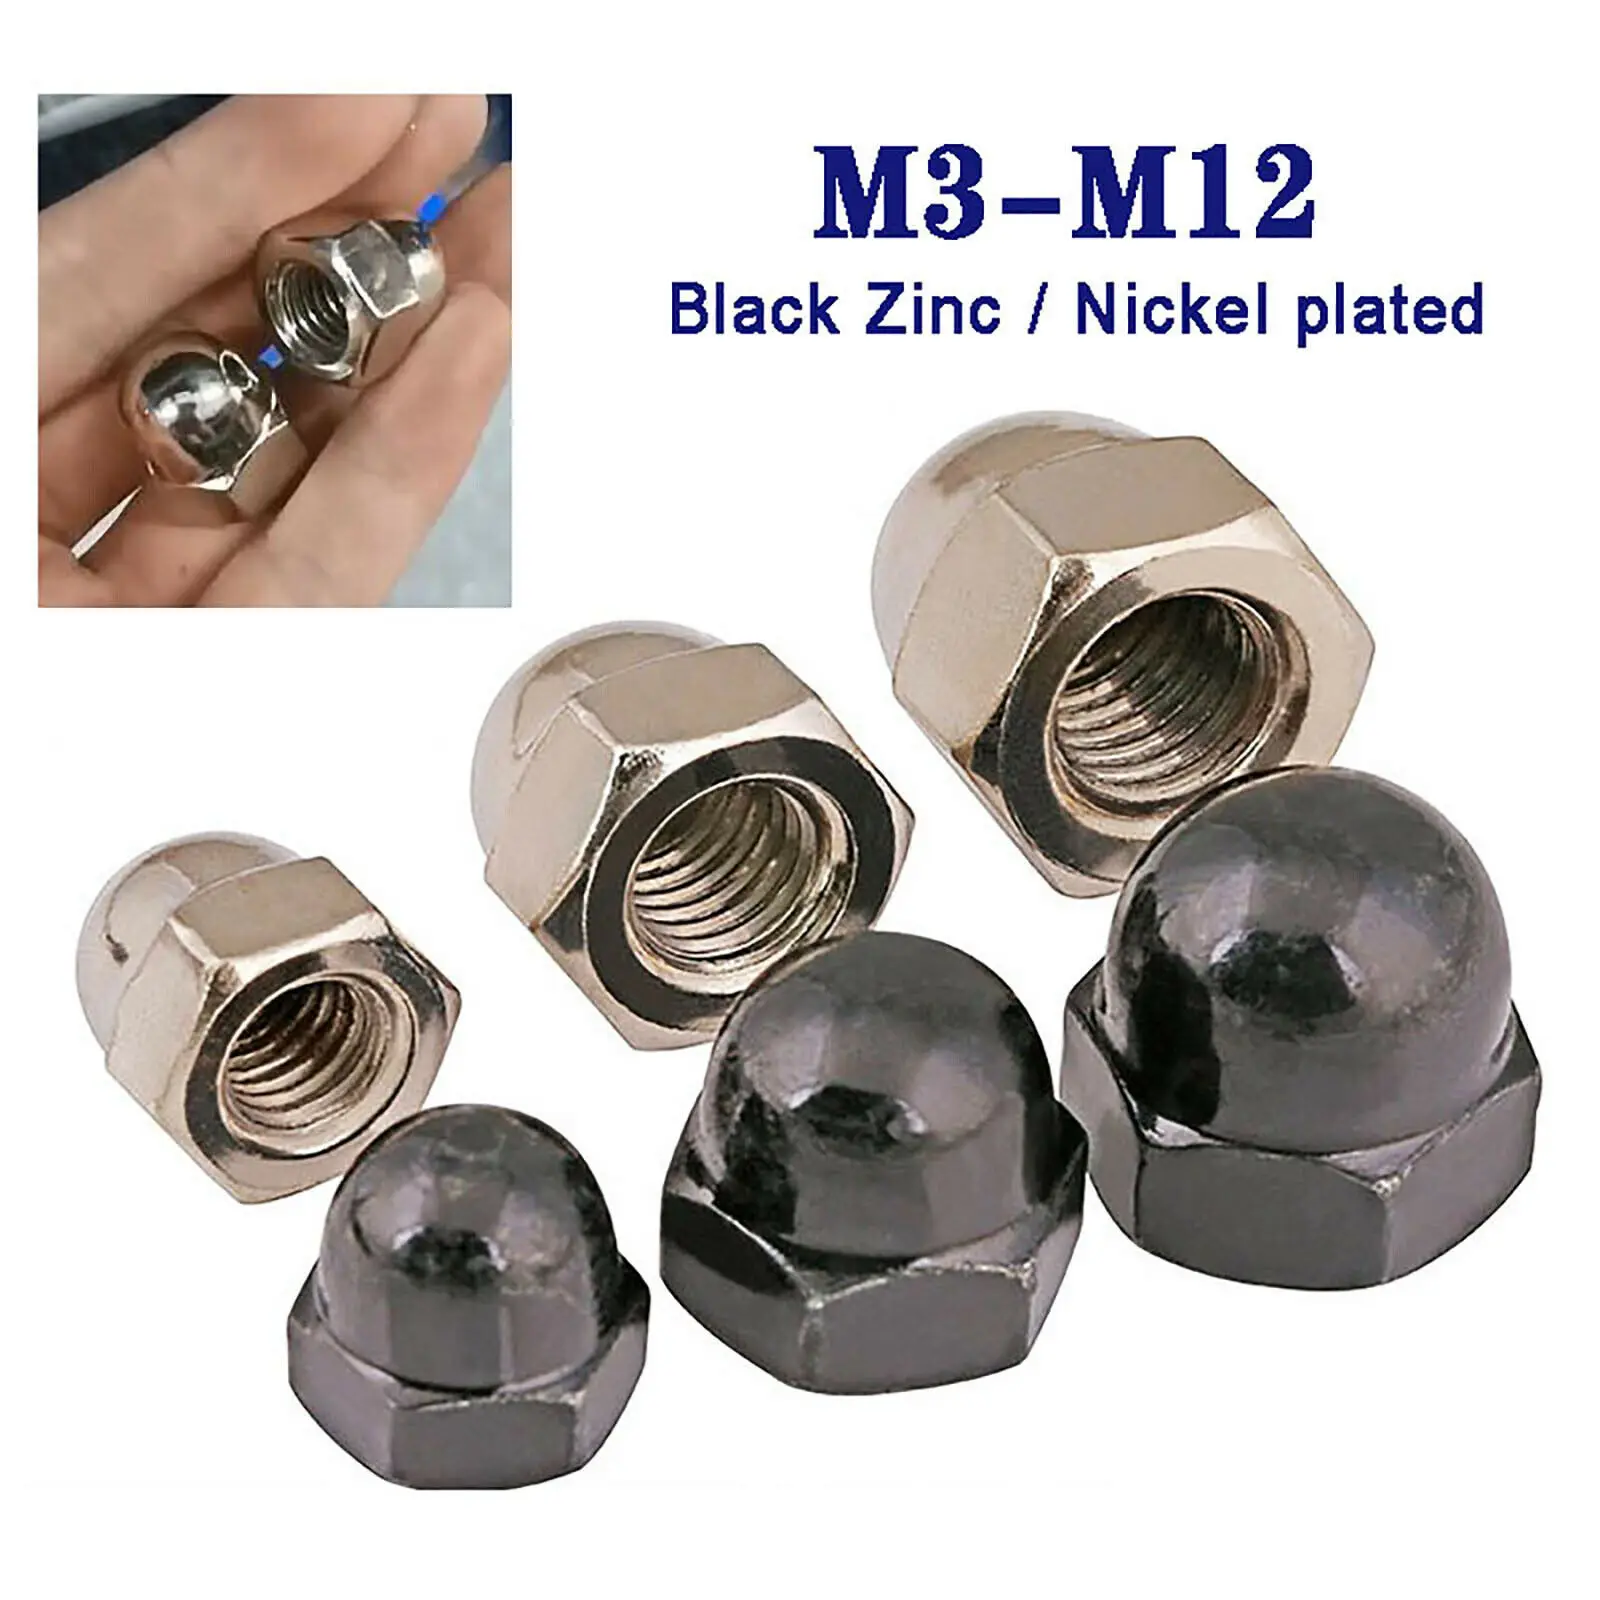 Details about   White Nylon Acorn Cap Nuts Plastic Dome Head Nut Decor Nut M3 M4 M5 M6 M8 M10M12 